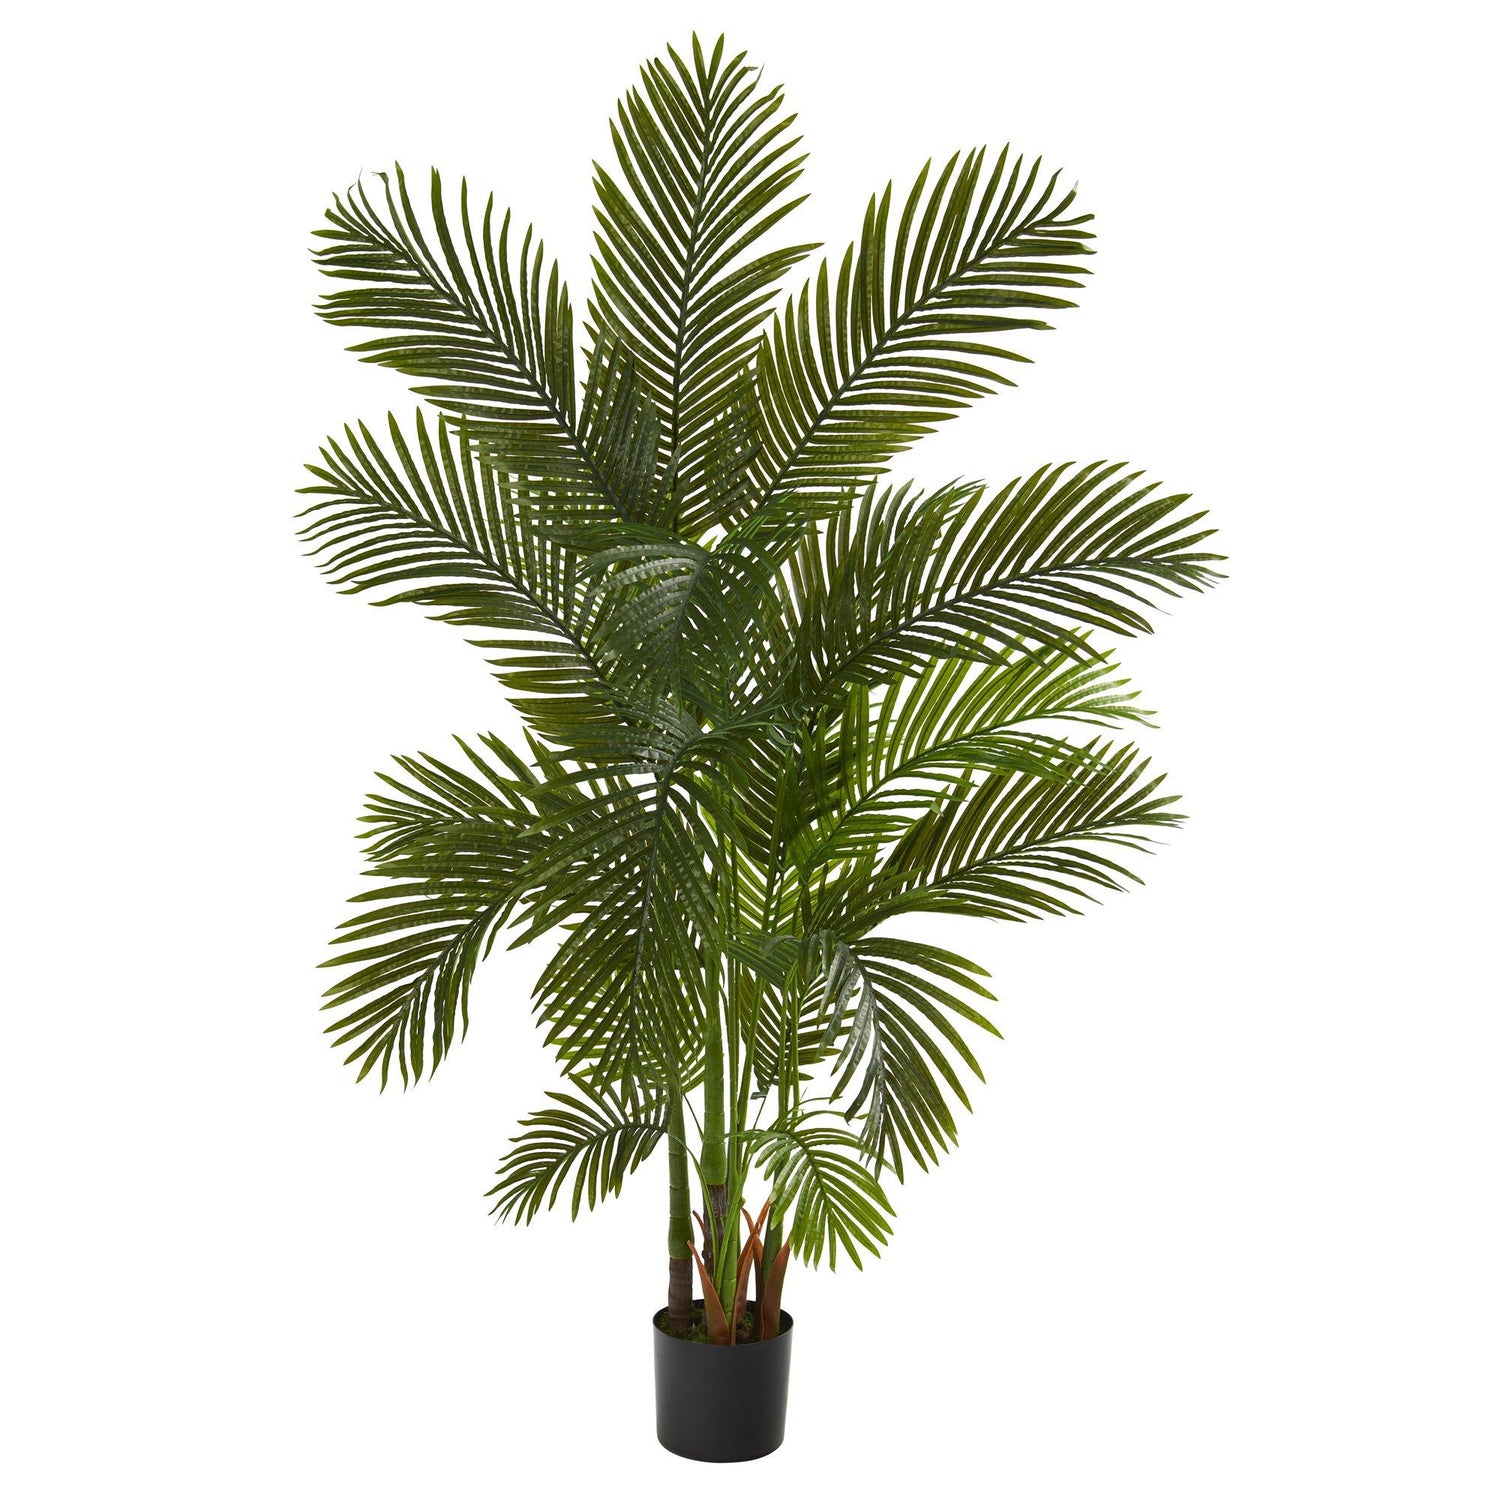 6' Areca Palm Artificial Tree